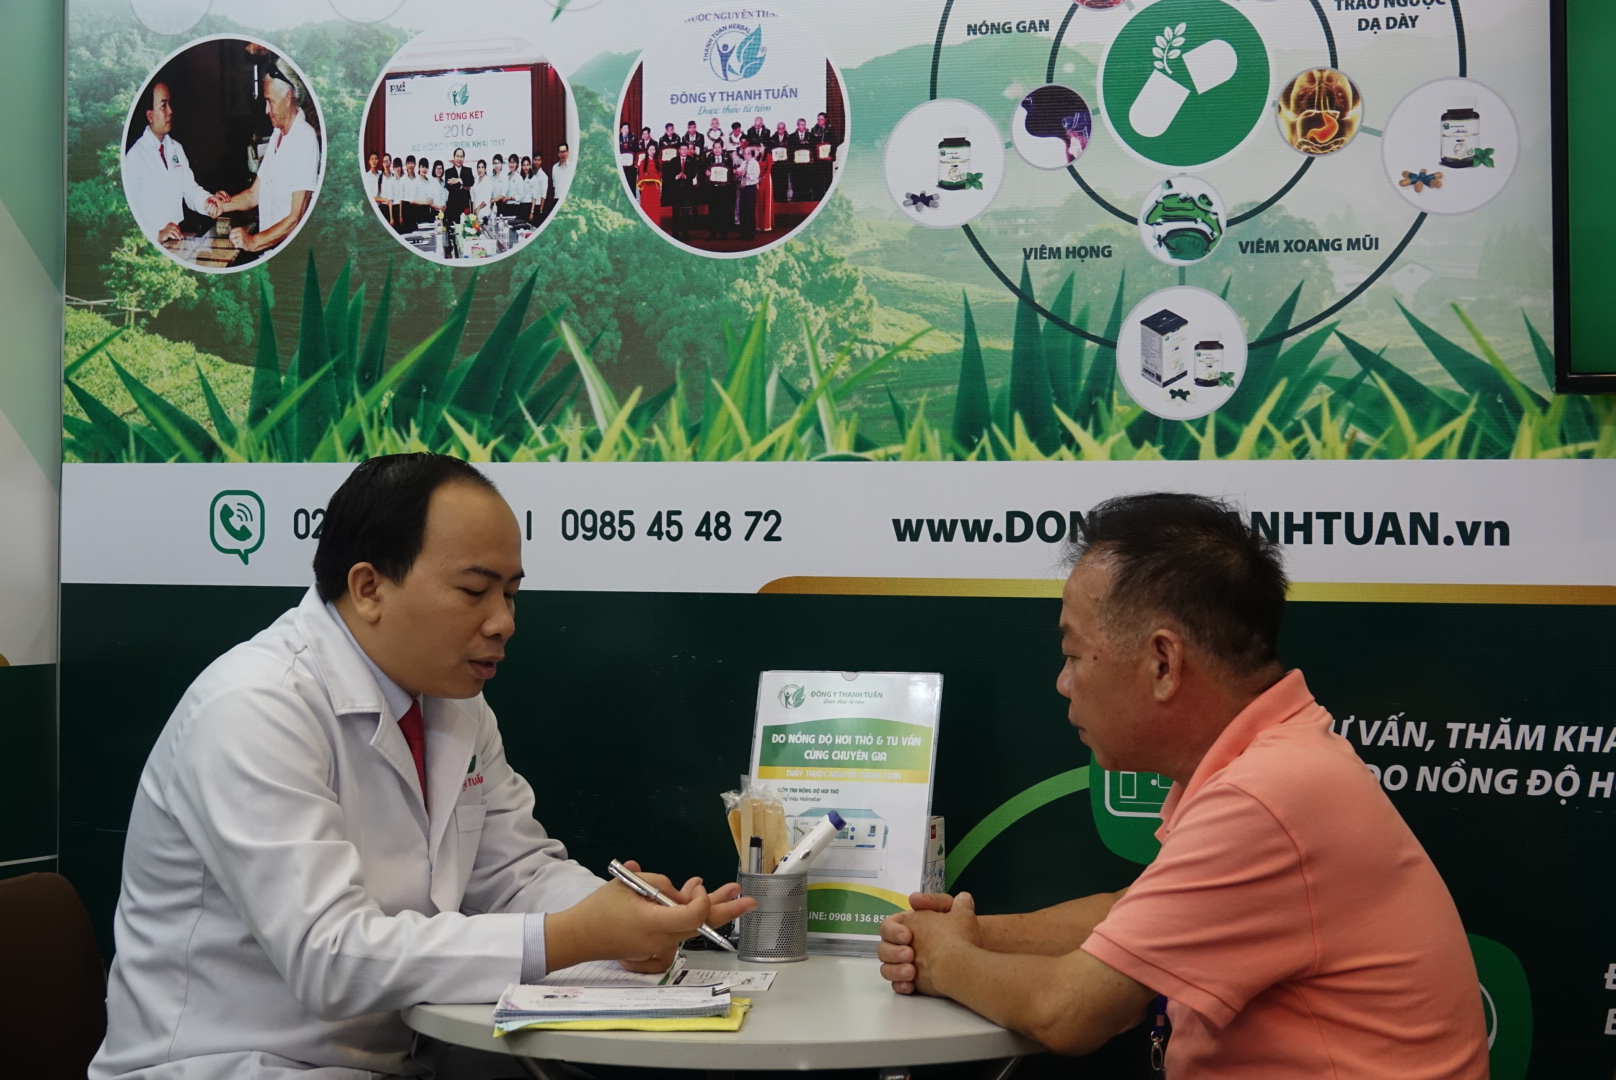 Thầy thuốc Nguyễn Thanh Tuấn bắt mạch tư vấn bệnh cho khách hàng